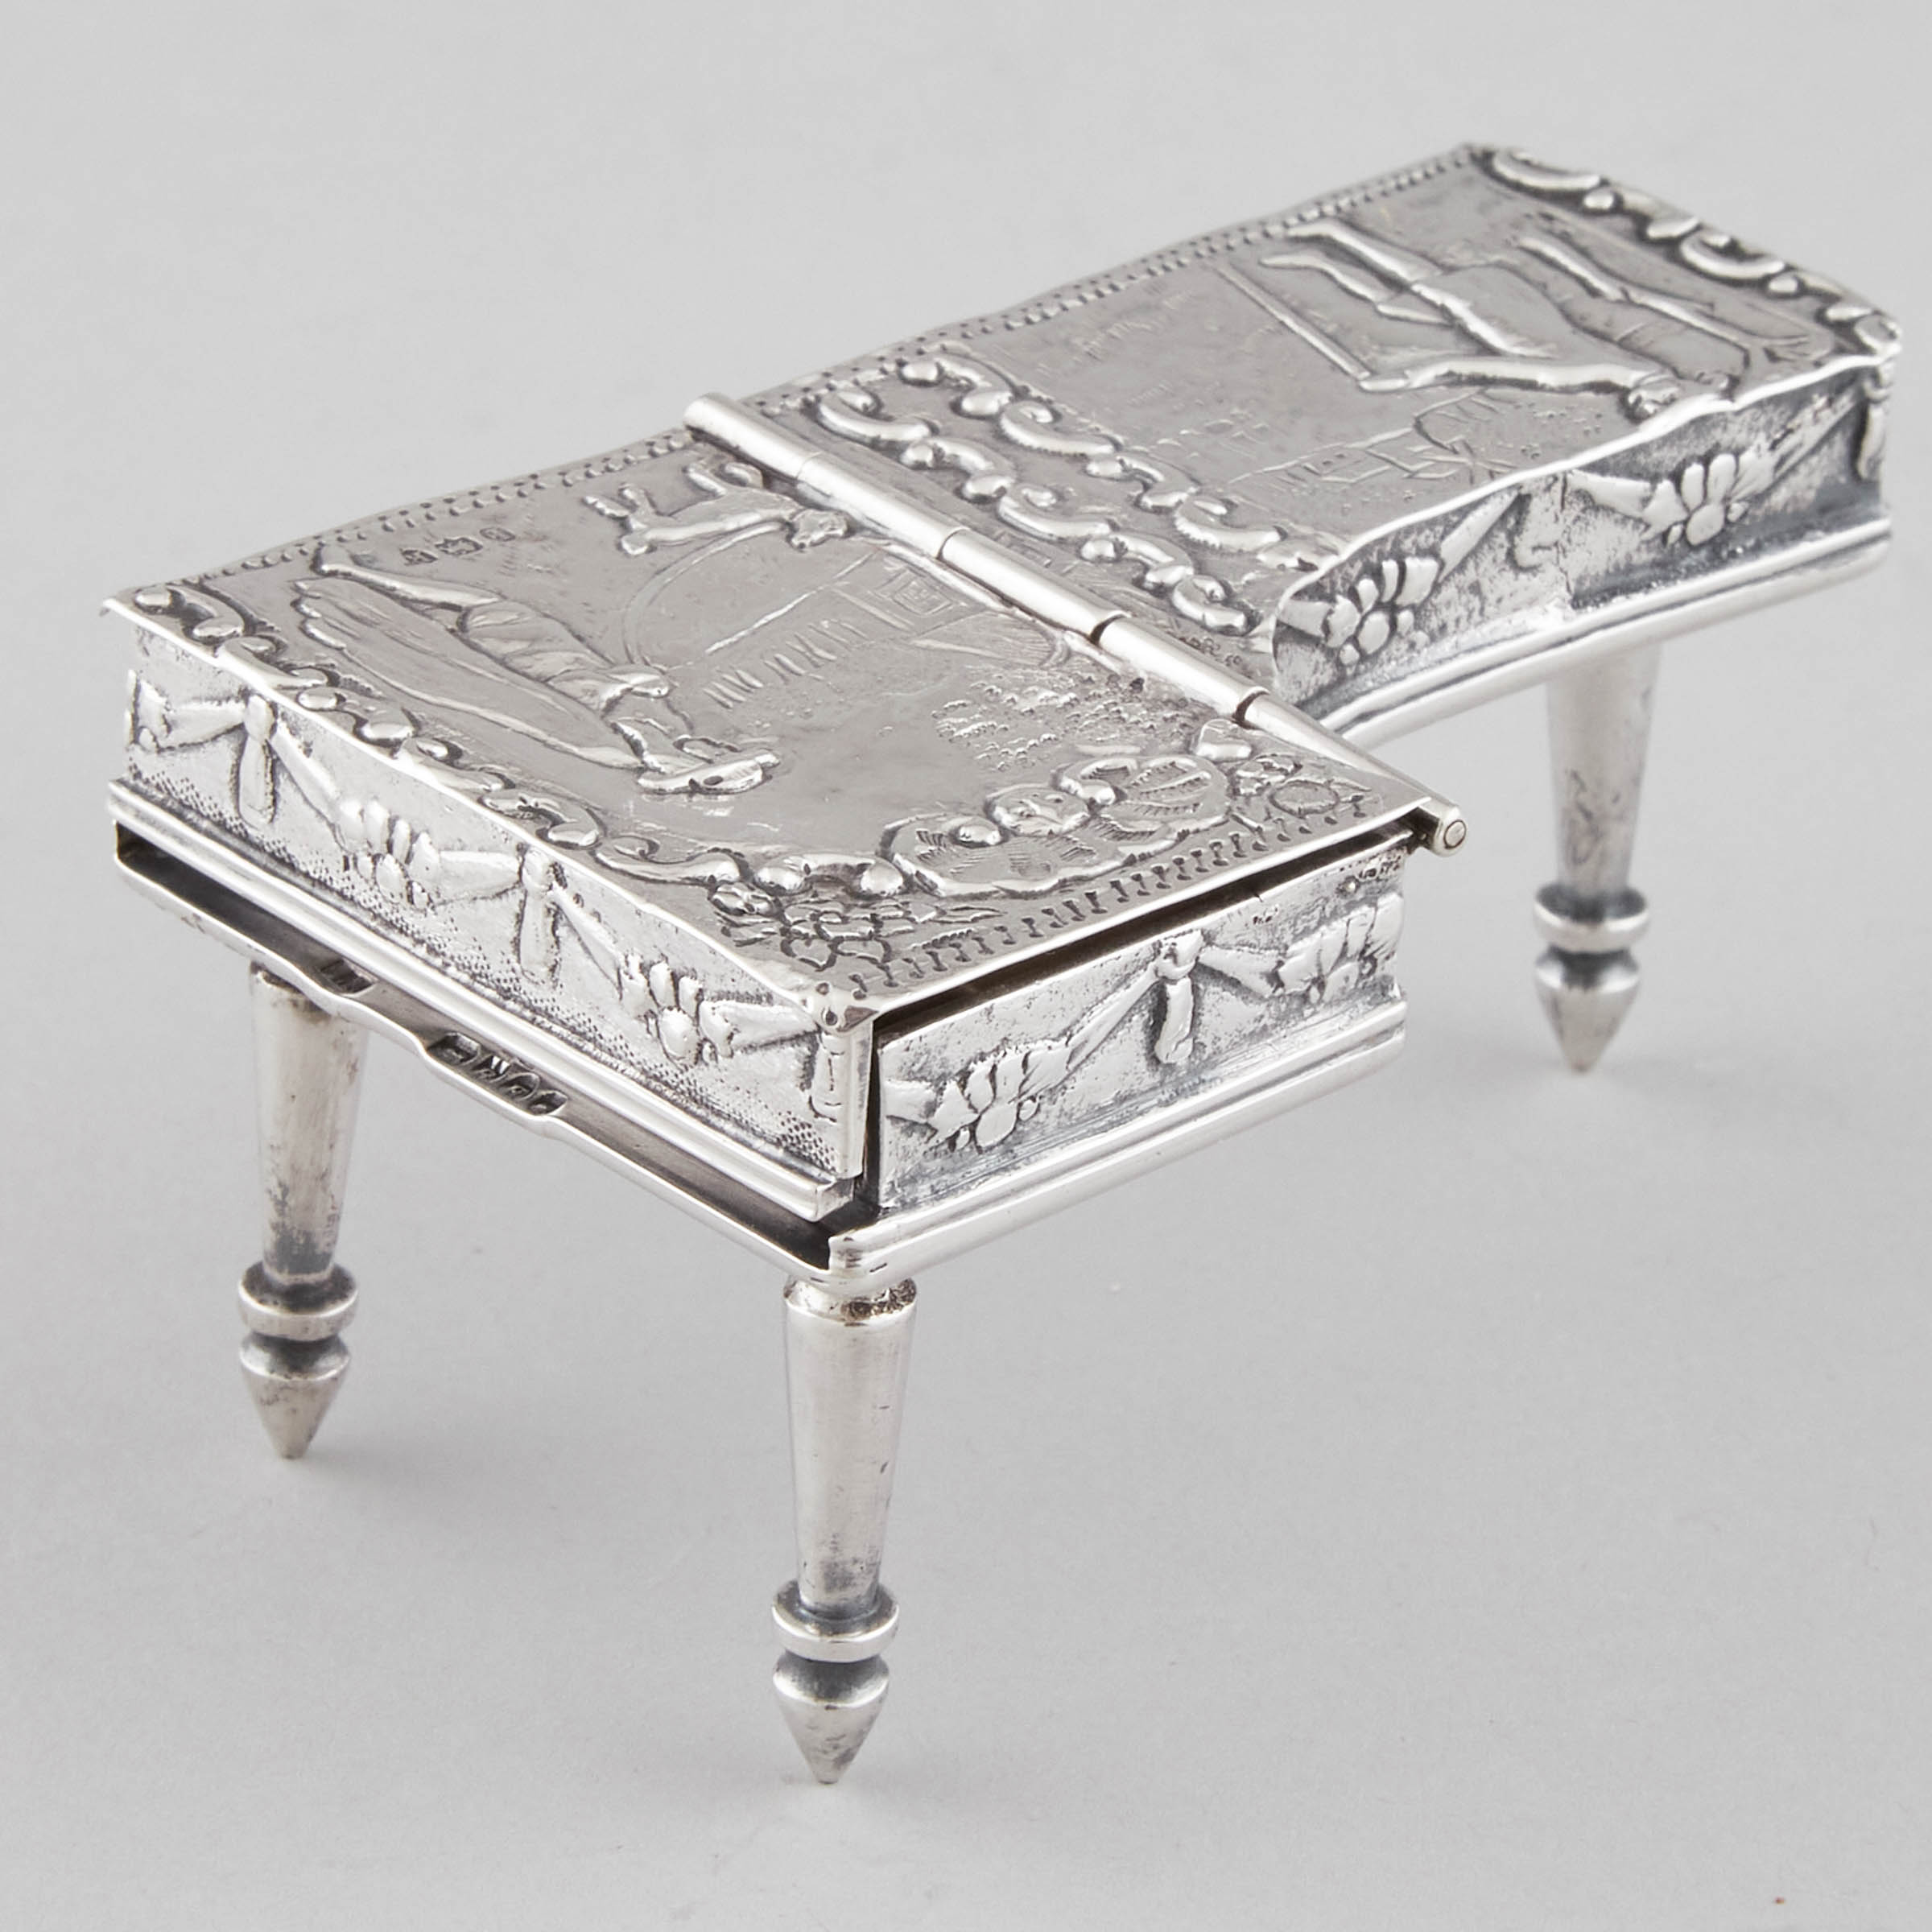 Dutch Silver Miniature Piano Rinze 2fb09c2